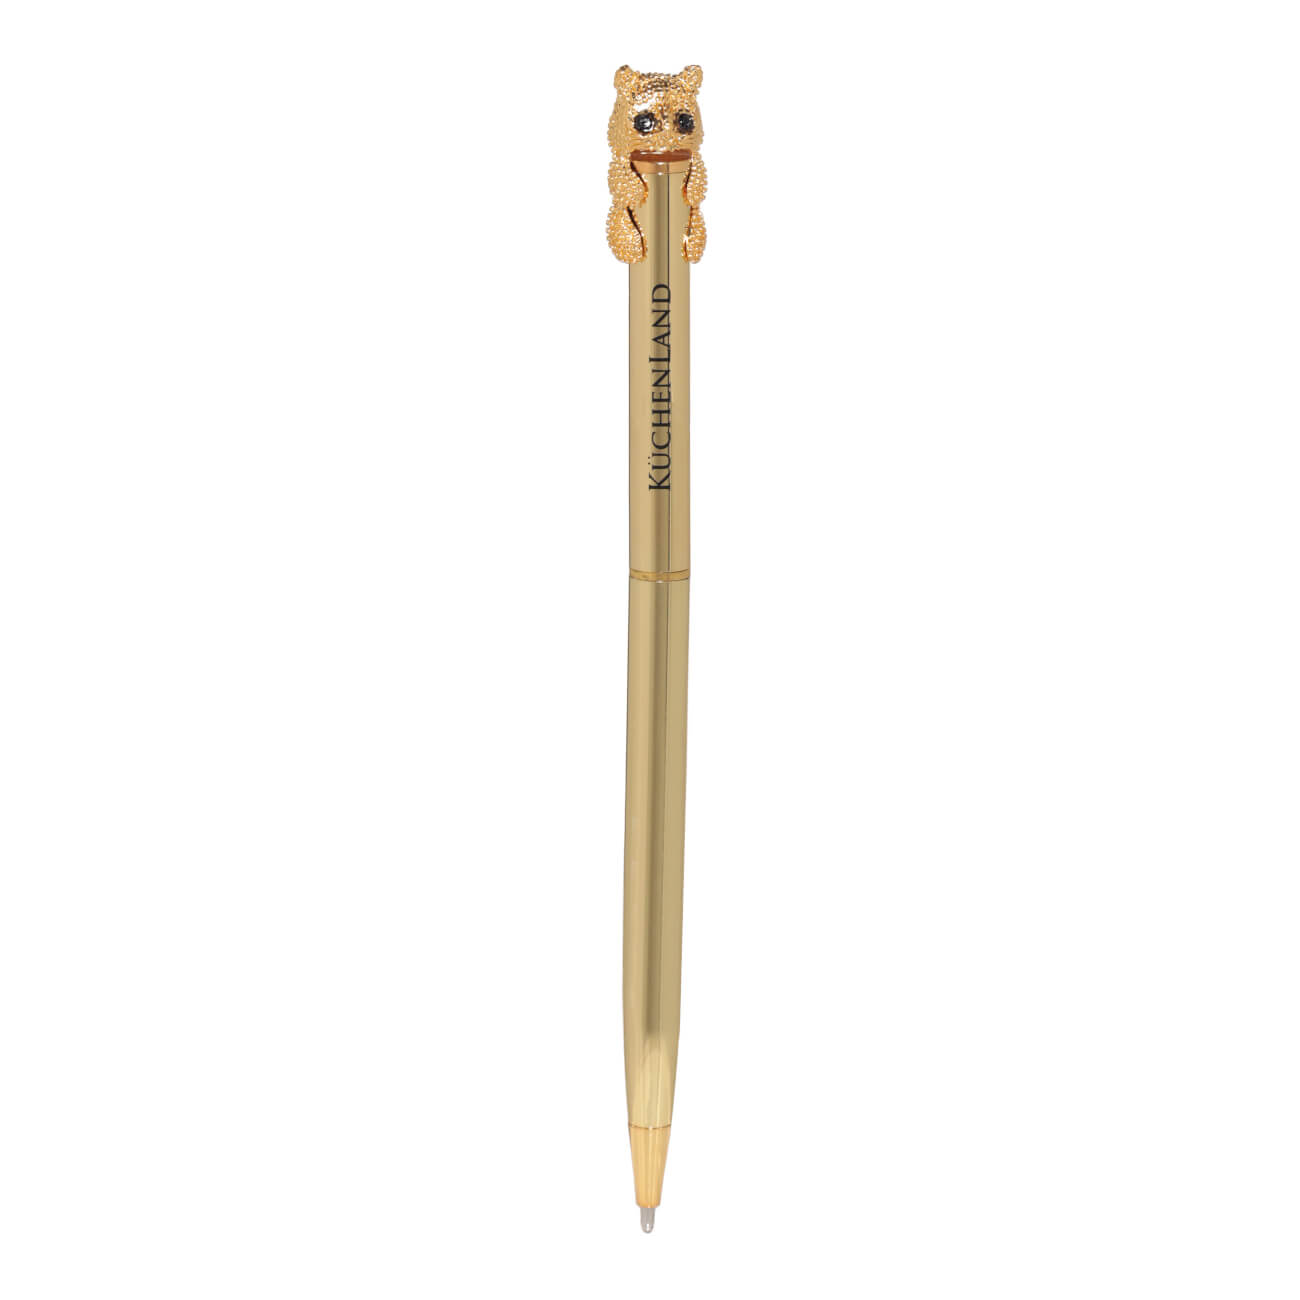 Ручка шариковая, 14 см, с фигуркой, золотистая, Кот, Draw figure